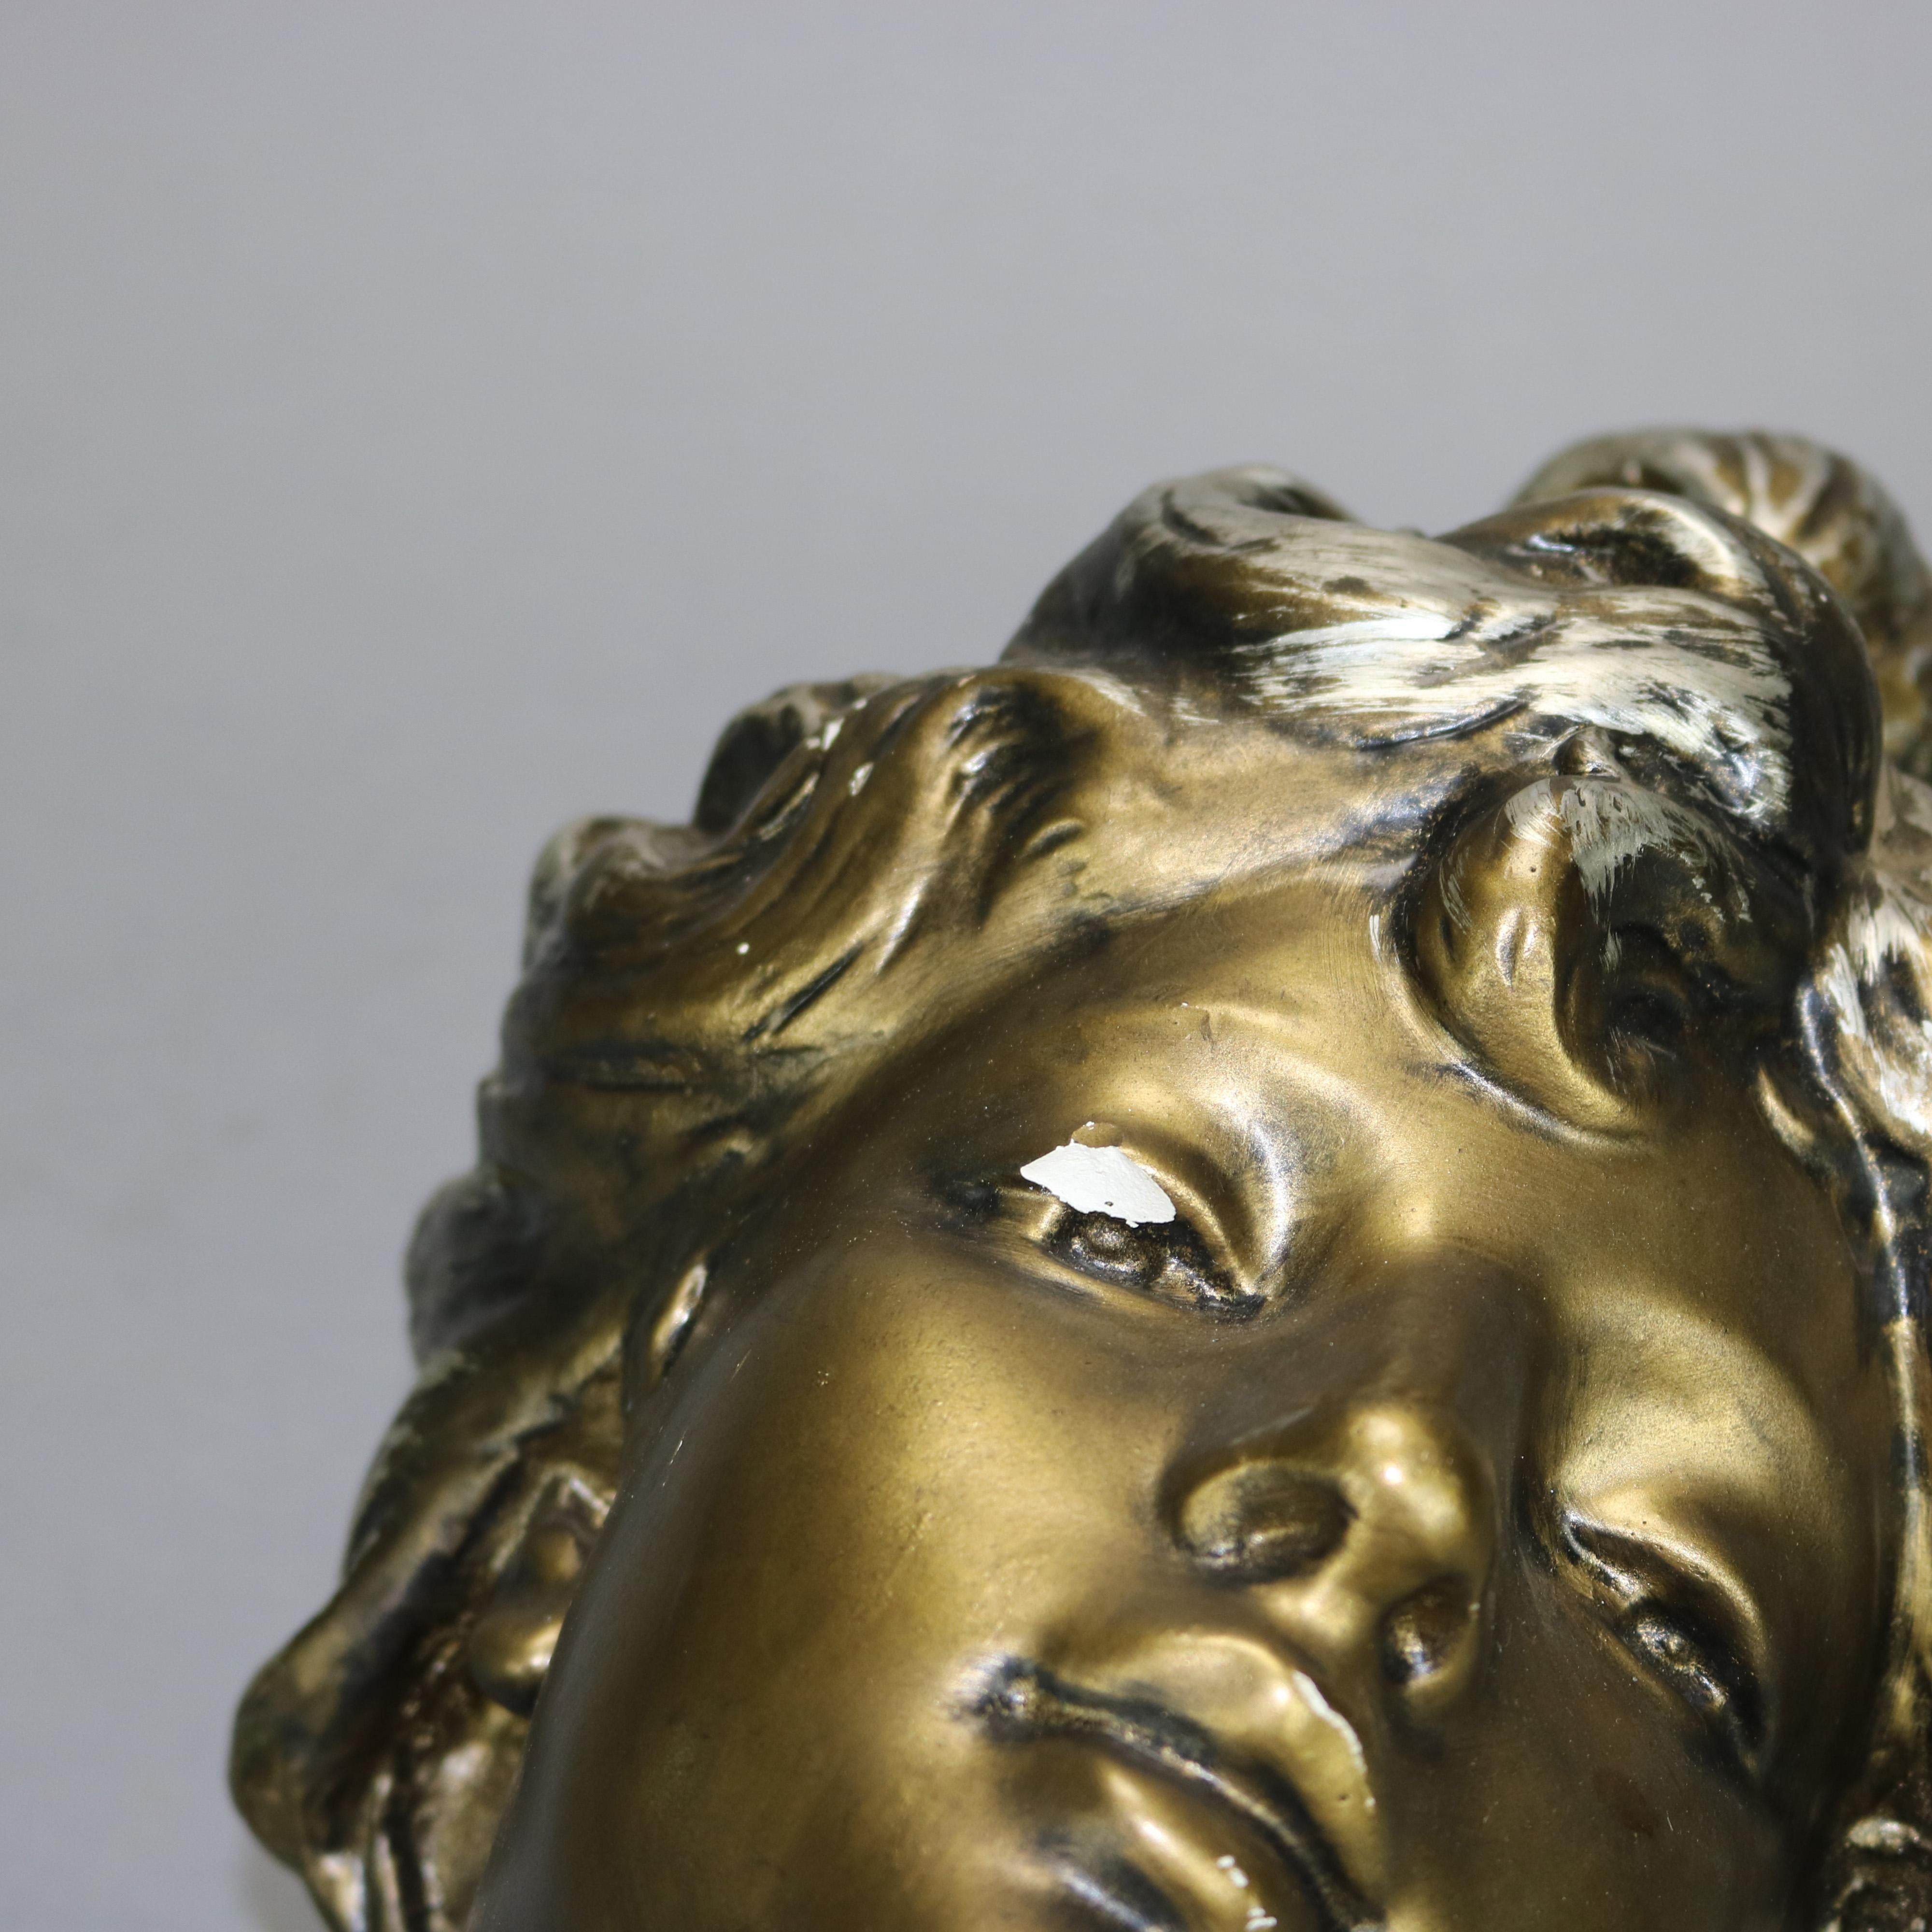 French Antique Art Nouveau Gilt Plaster Portrait Bust Sculpture of Woman, Circa 1910 For Sale